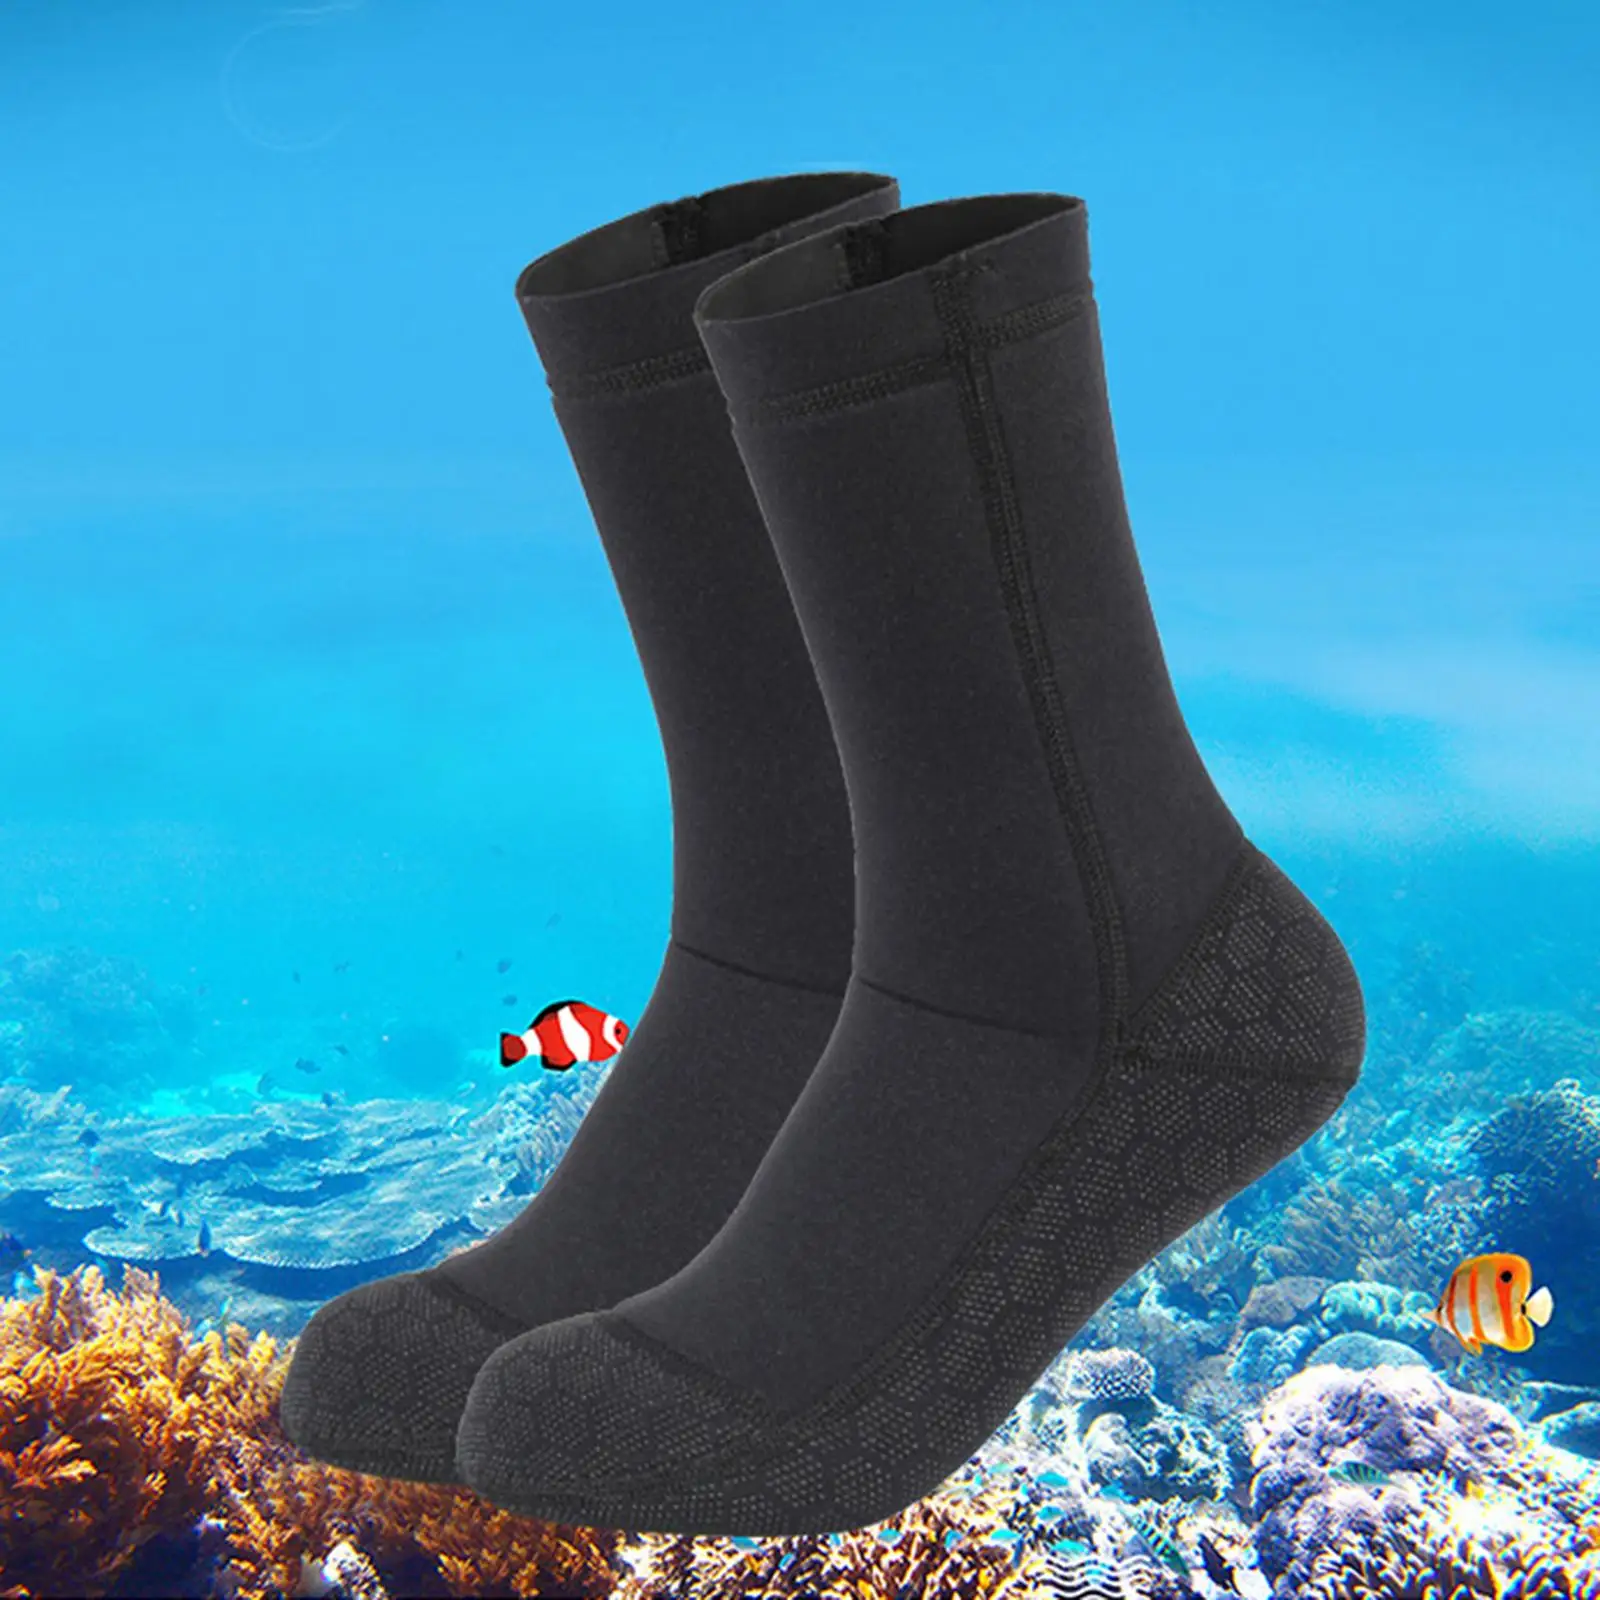 3mm Neoprene Diving Socks Water Resistant Warm Flexible  Proof Beach Socks Anti Slip for Surfing  Sports Swim Women Men